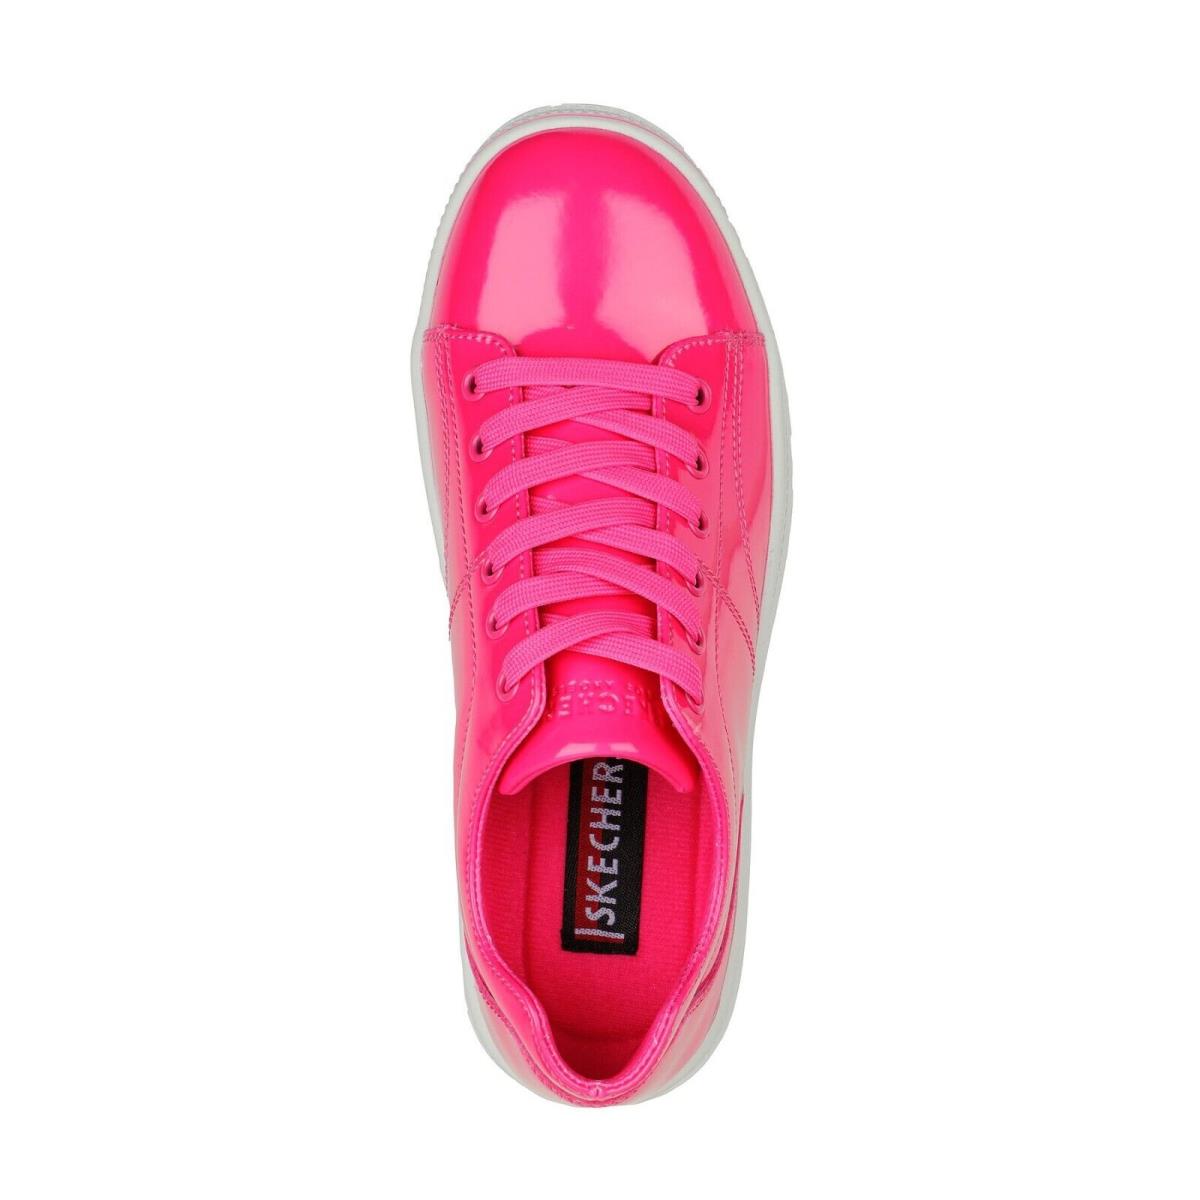 Skechers shoes Roadies - Hot Pink 7